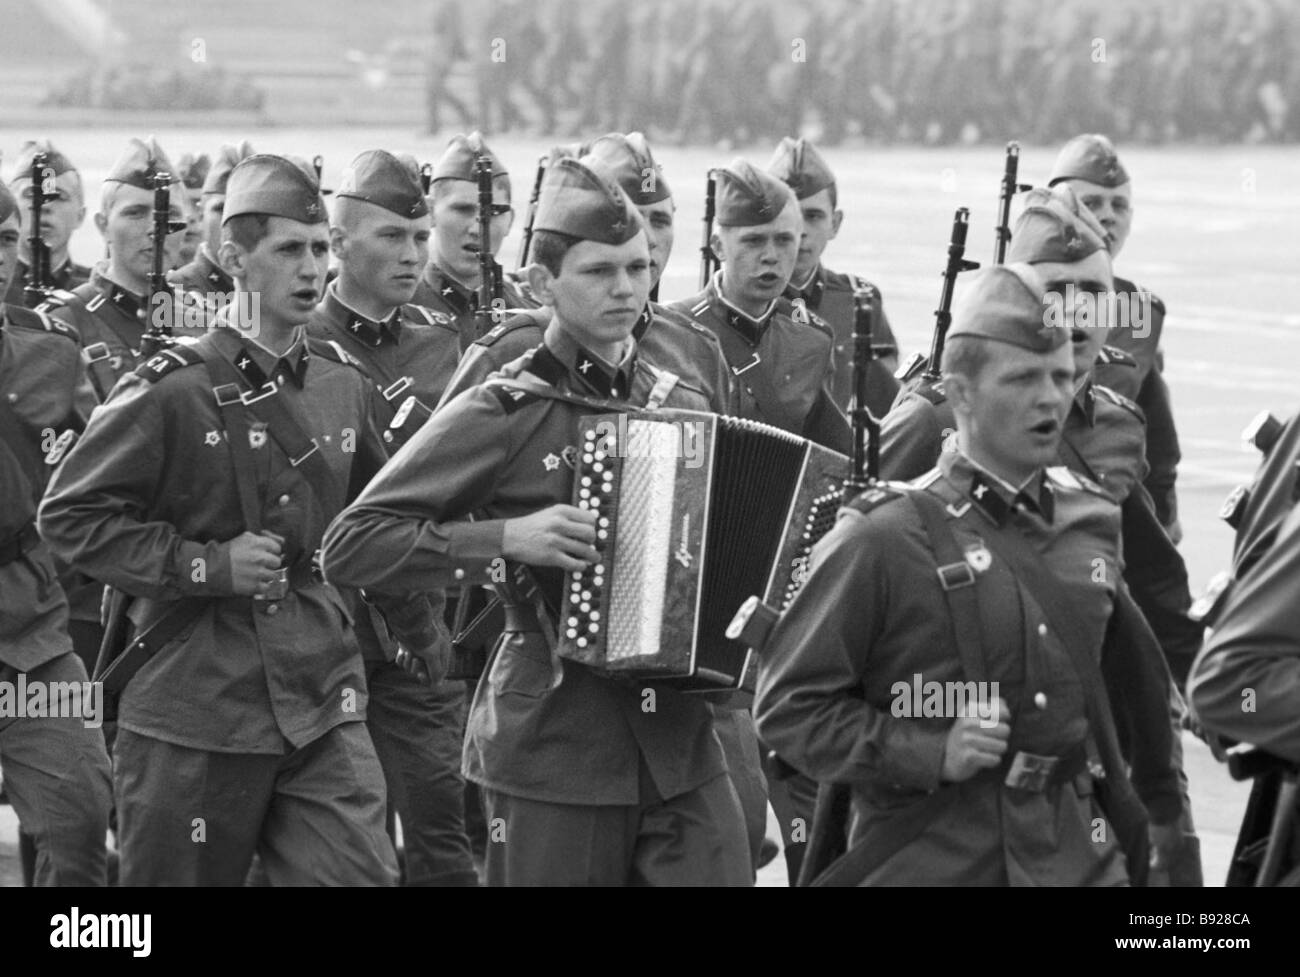 Песня солдаты солдаты солдаты войны детское. Советские солдаты поют. Советские солдаты маршируют. Солдаты поют в строю.